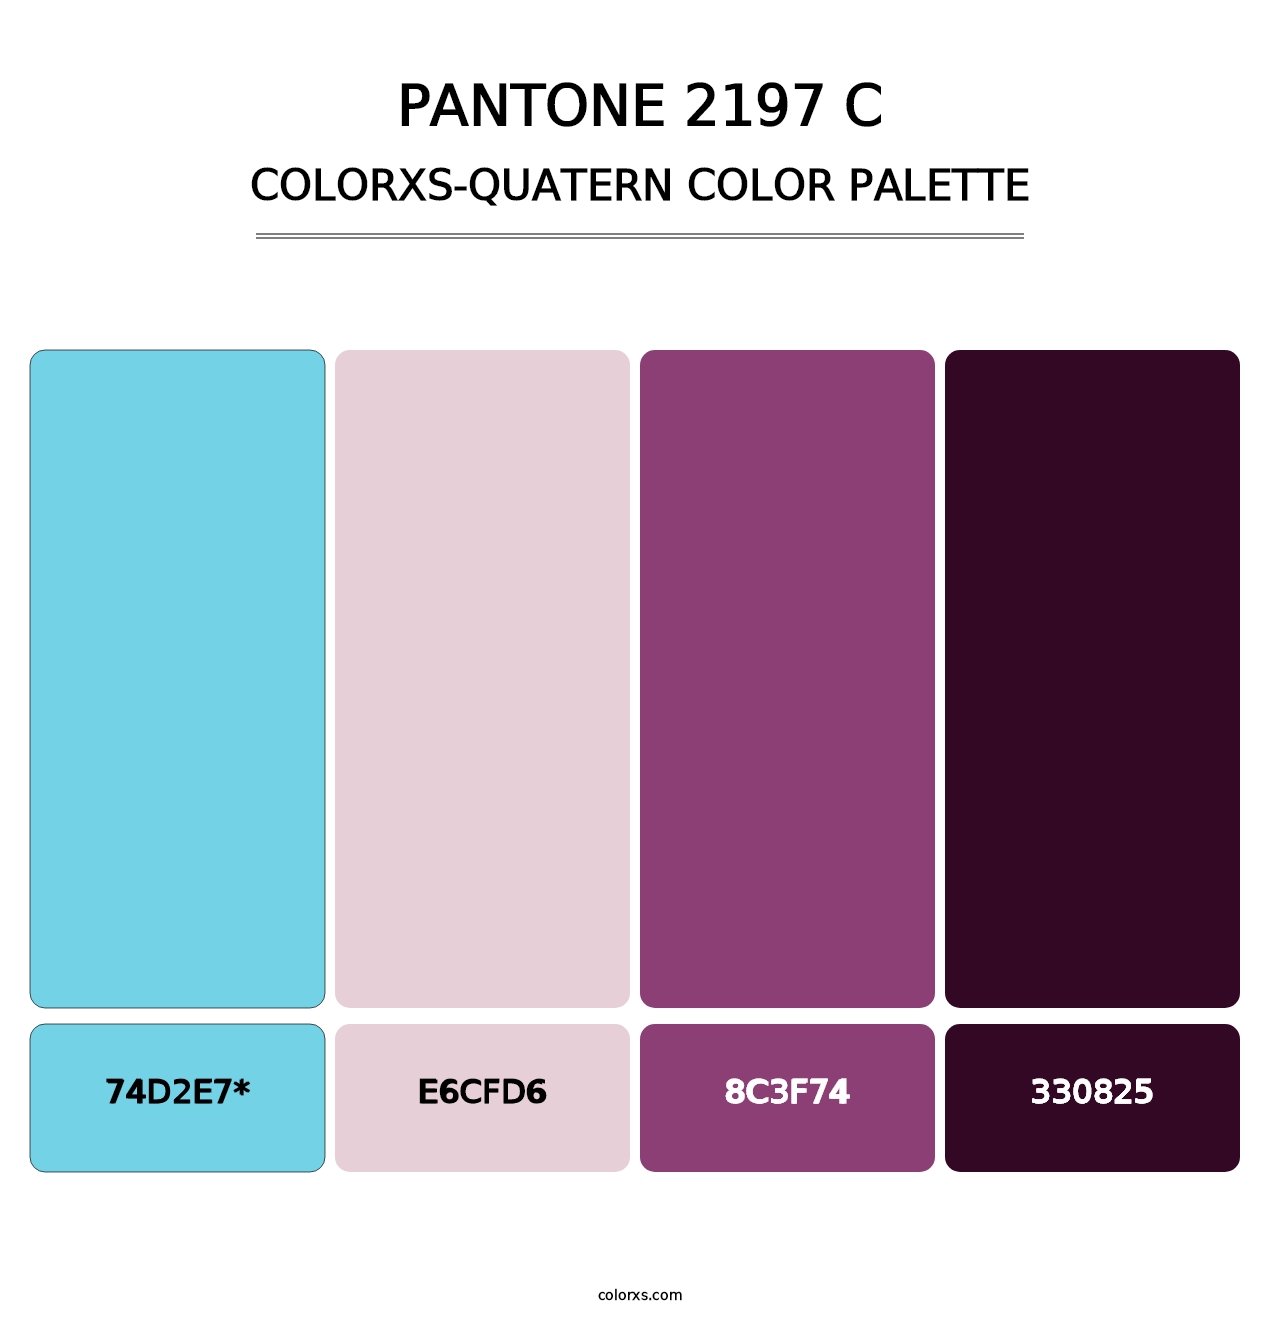 PANTONE 2197 C - Colorxs Quatern Palette